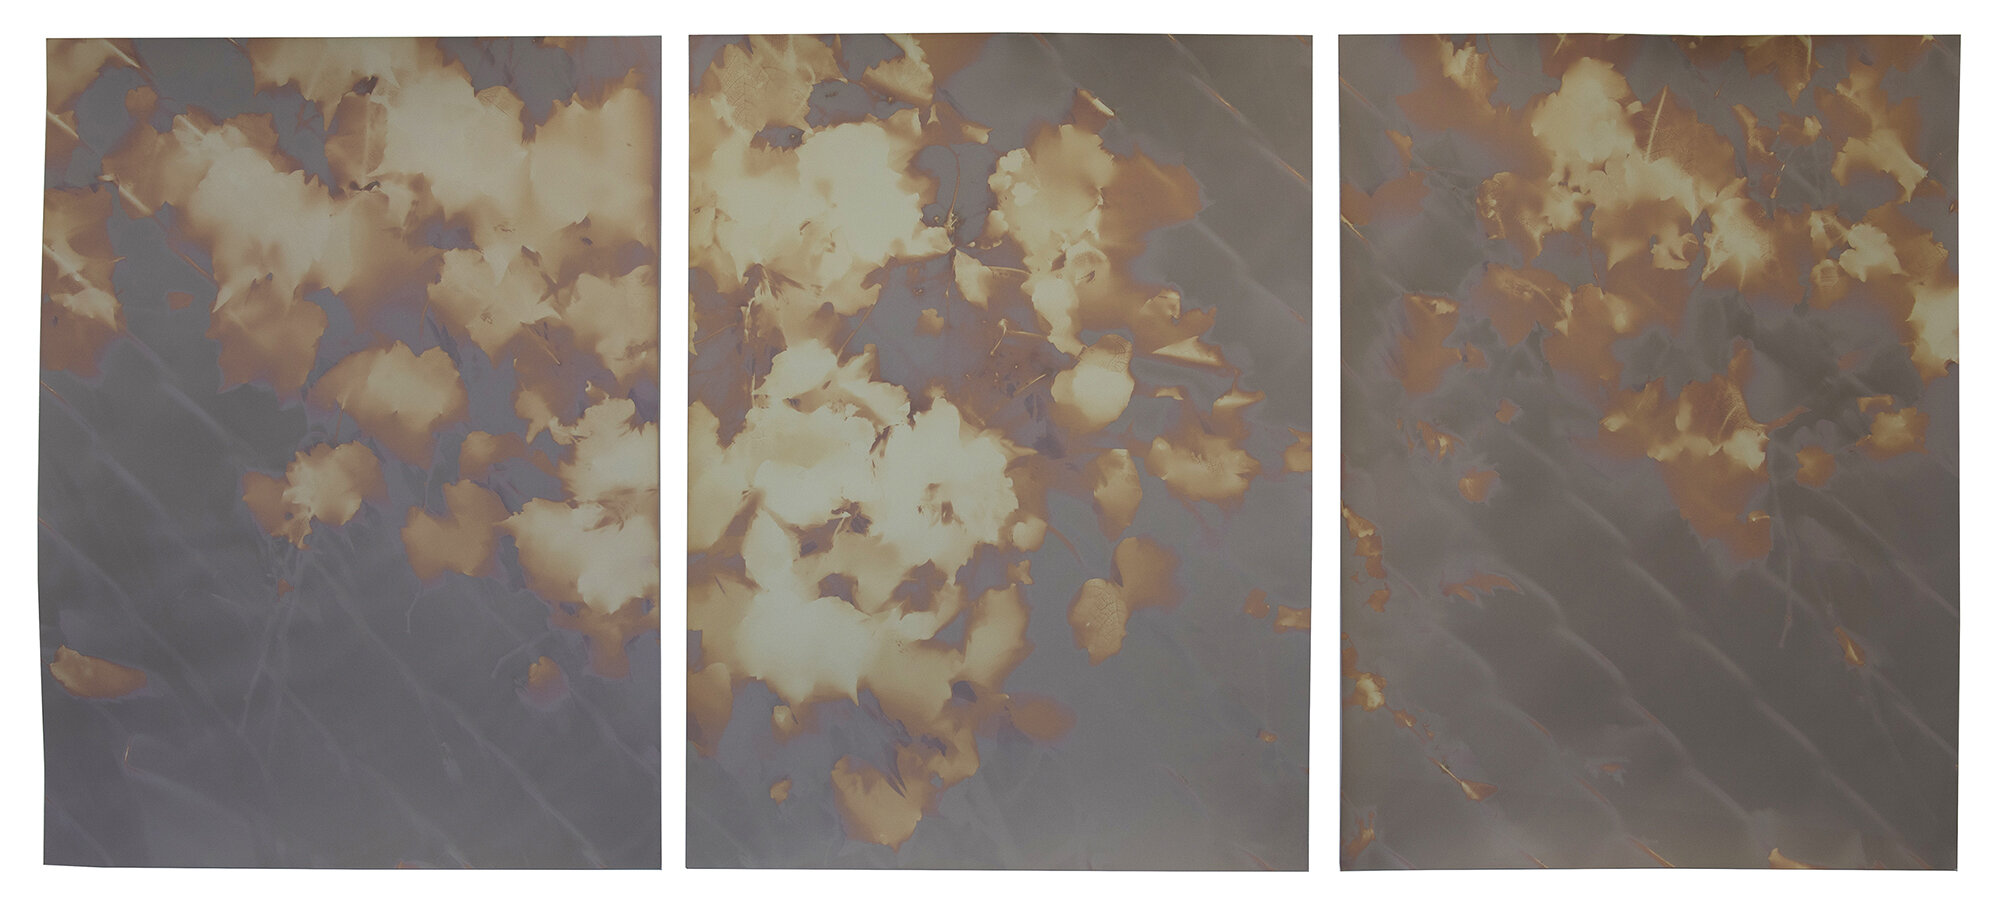  red hook triptych #6 wolcott st  20” x 45”  lumen prints 